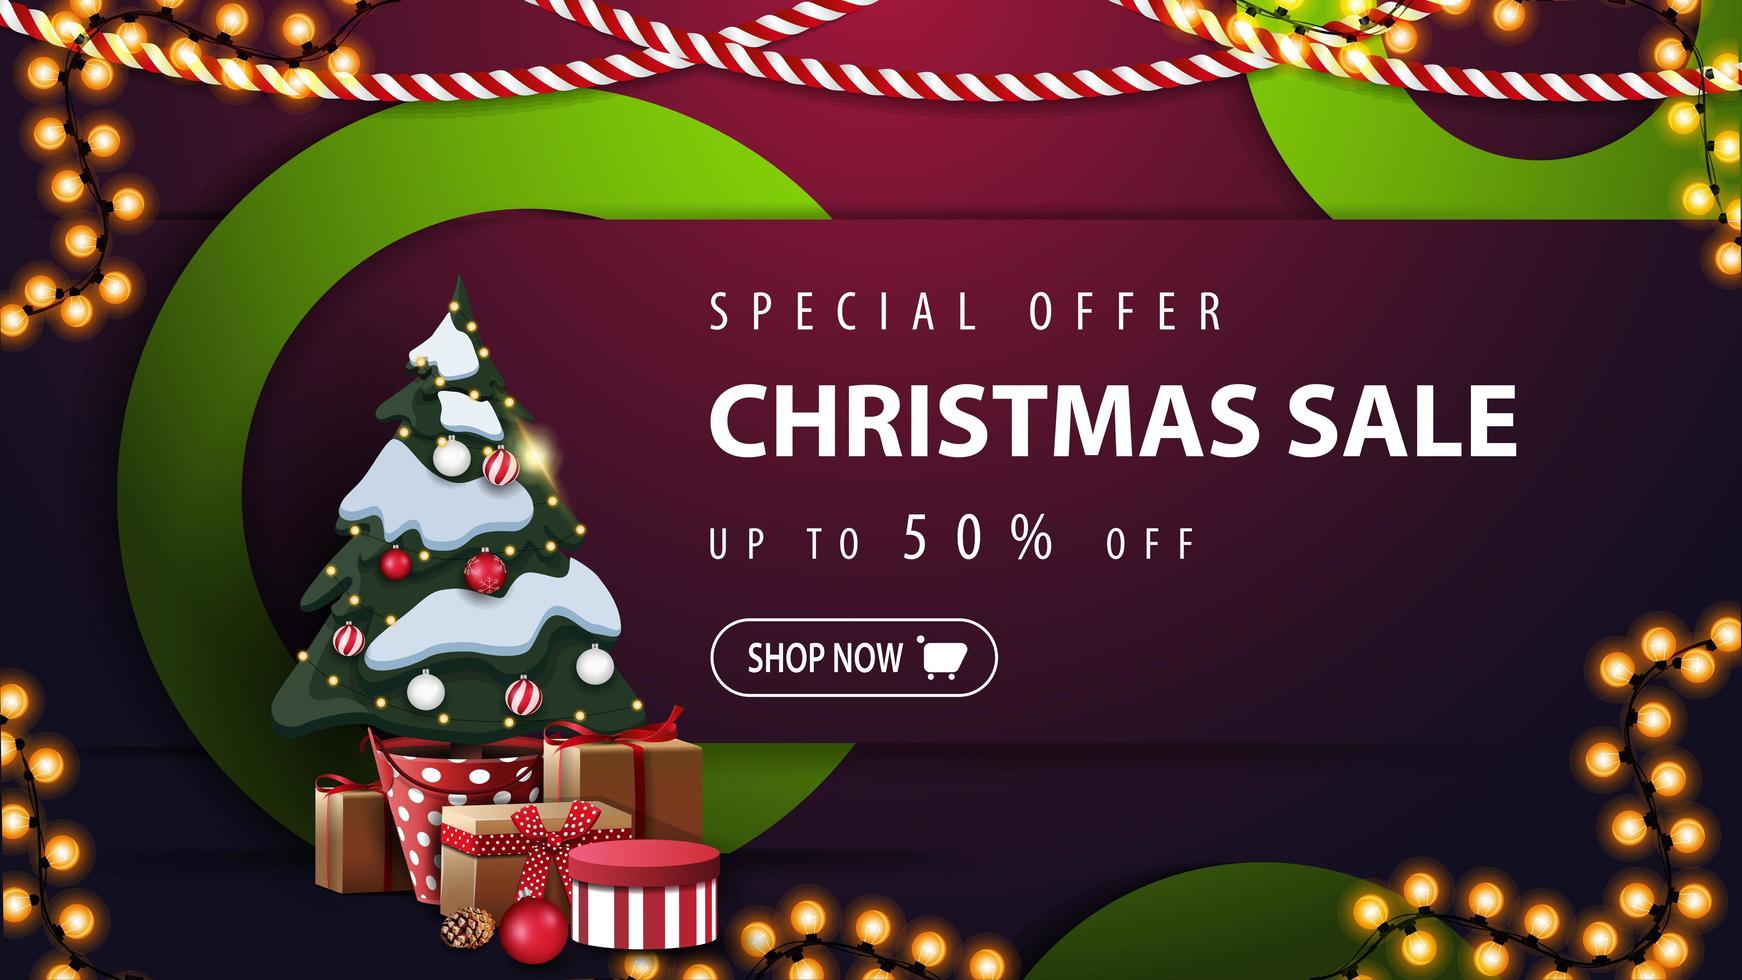 speciale aanbieding, kerstuitverkoop, tot 50 korting, paarse kortingsbanner met groene decoratieve ringen, slingers en kerstboom in een pot met geschenken vector